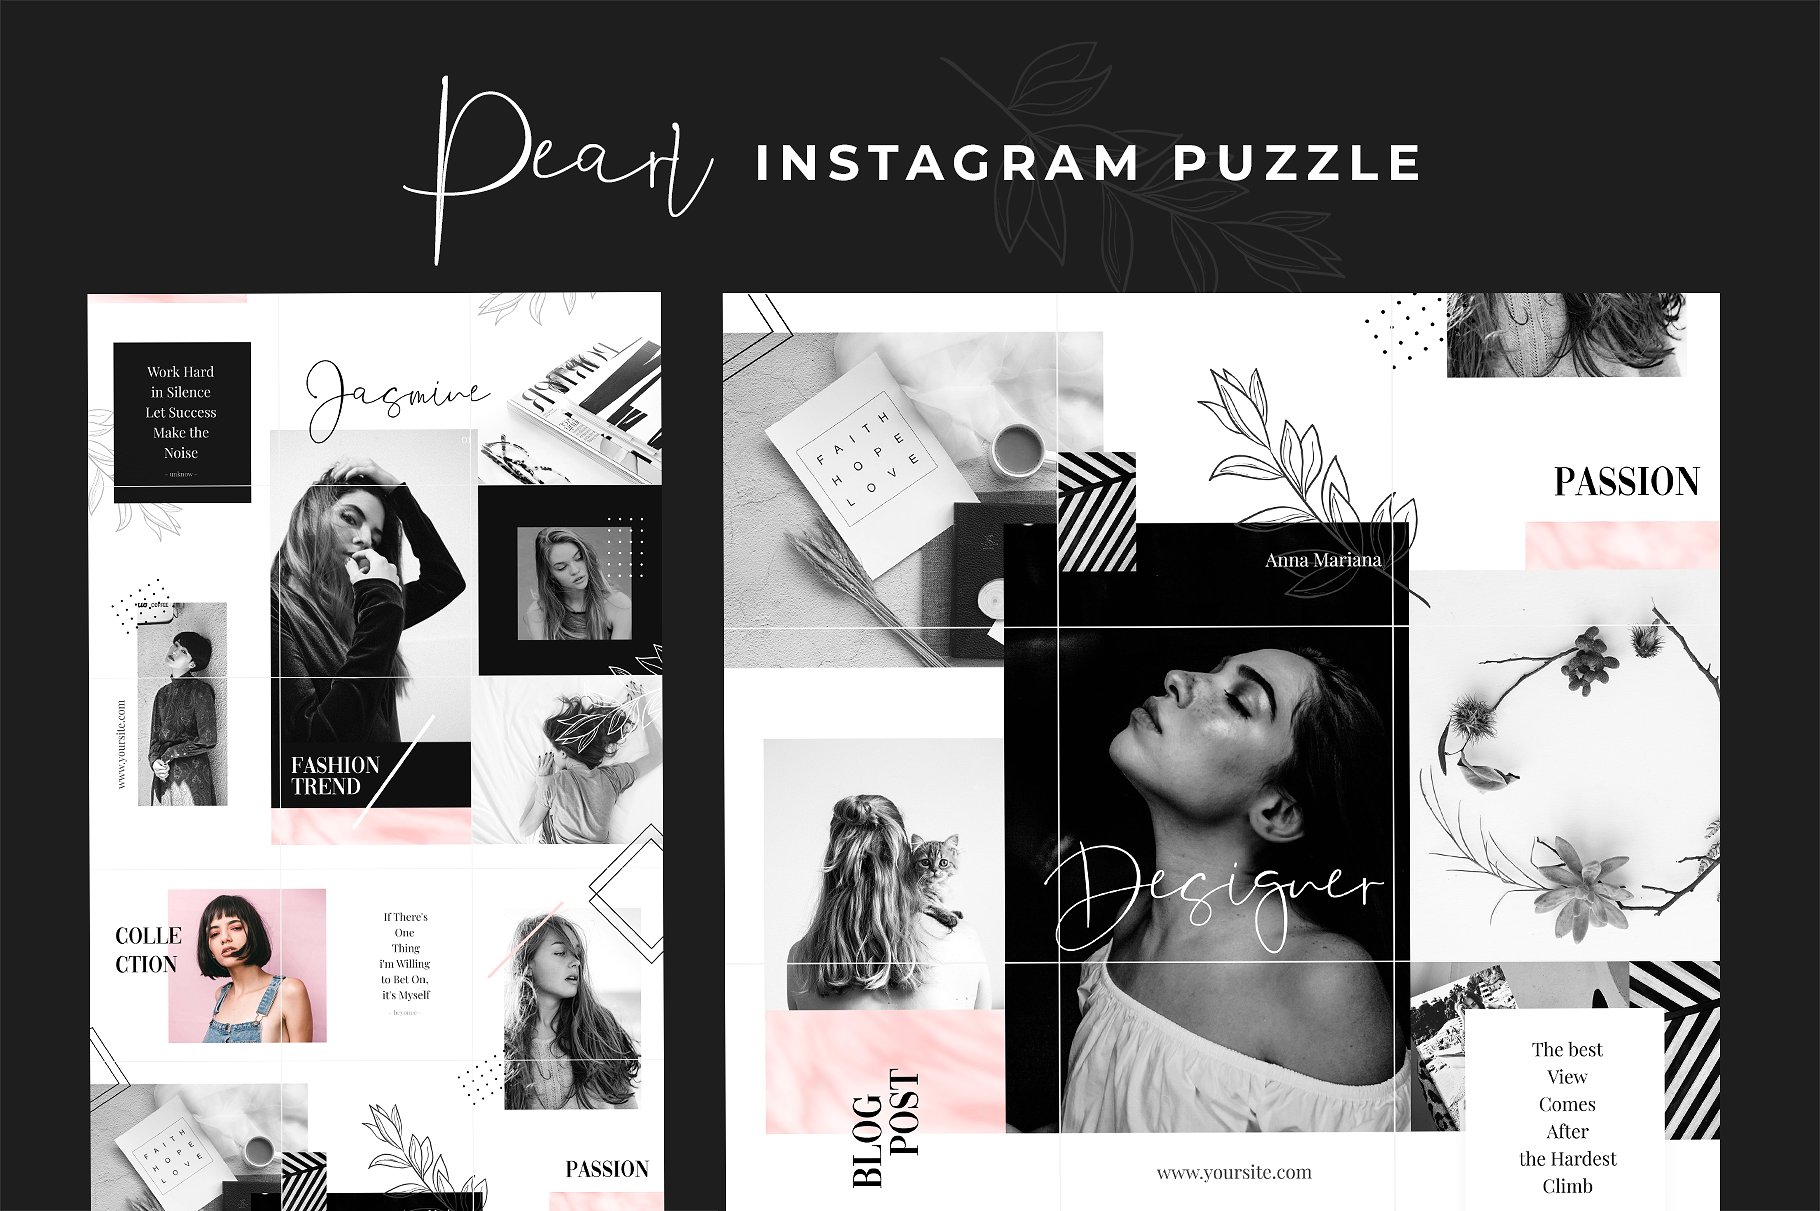 时尚高端的Instagram 社交媒体模板素材库精选合辑下载 Royal Instagram Bundle [psd]插图(9)